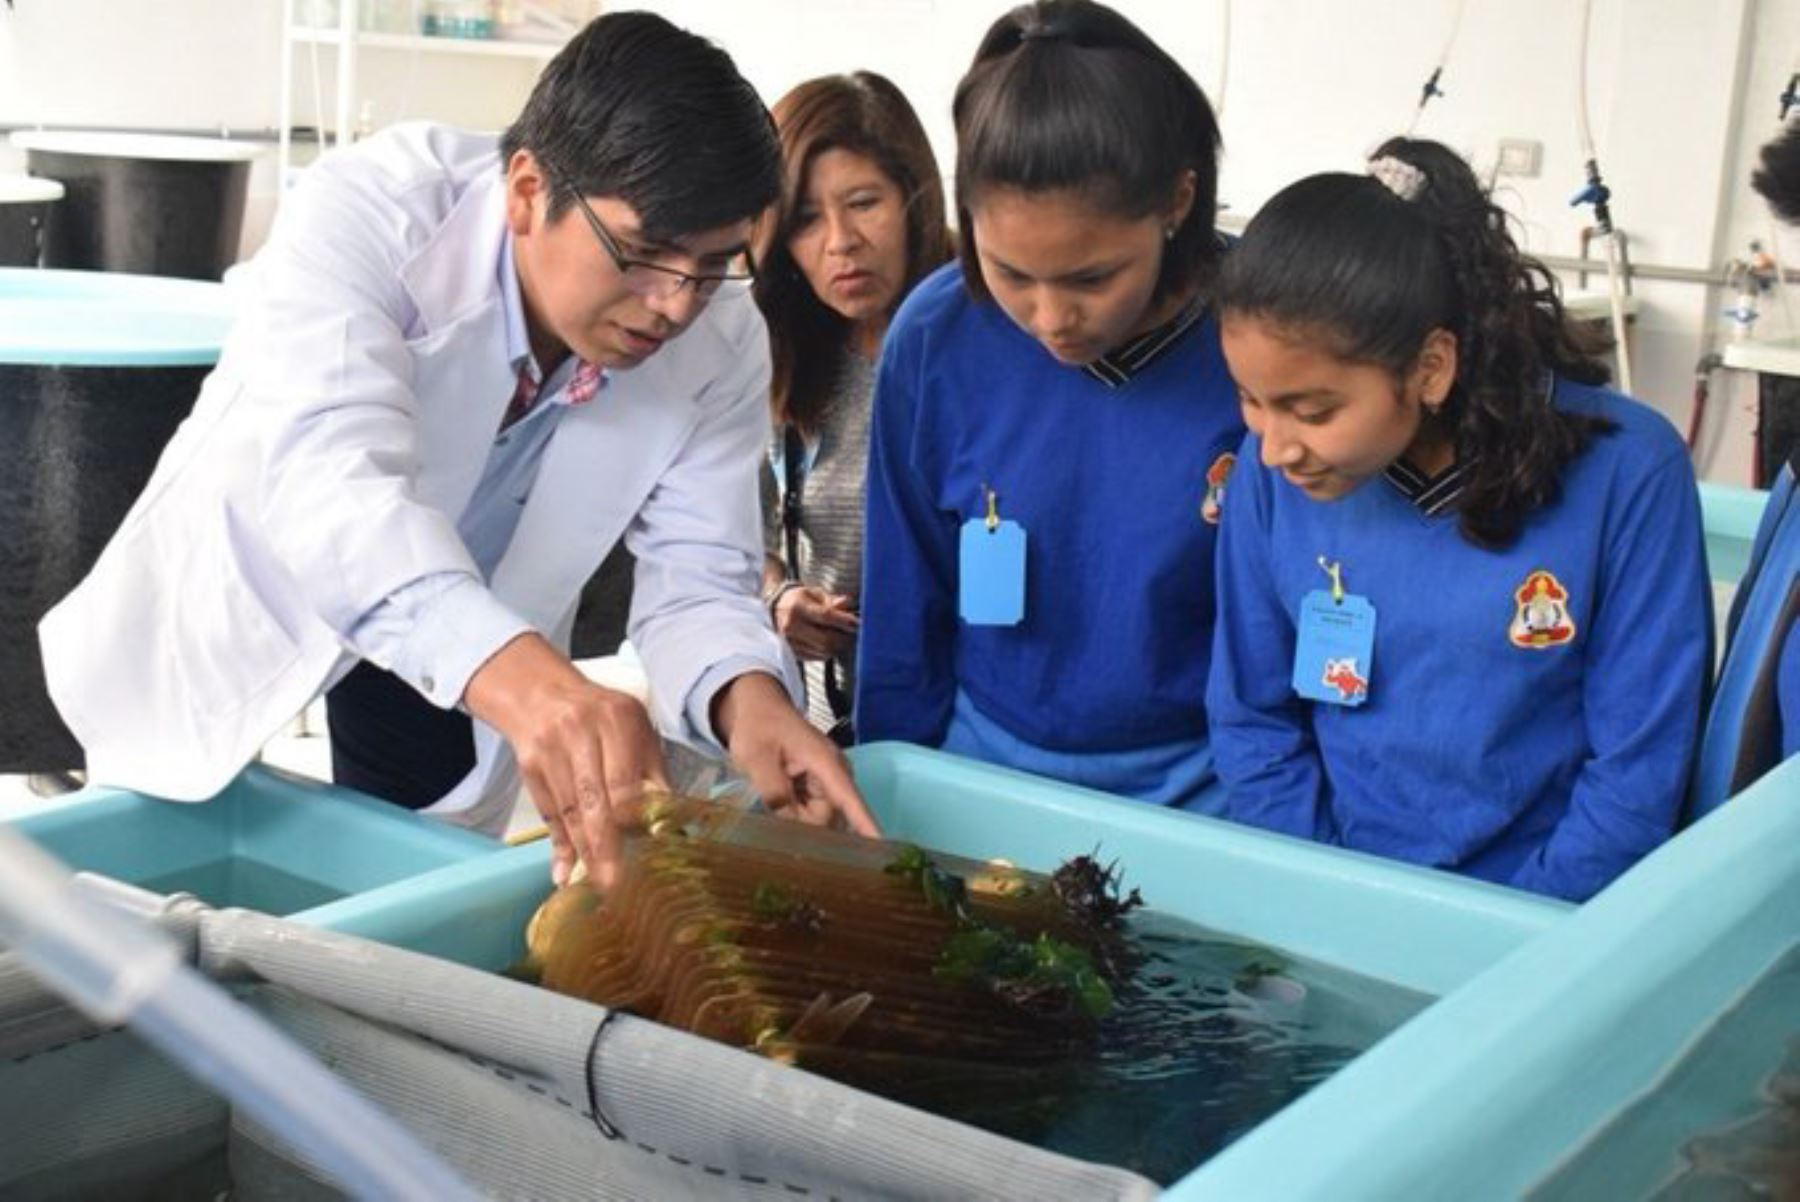 Instituto del Mar del Perú difundirá su labor científica en 13 ciudades del país, este viernes 15 de noviembre  en el evento "Imarpe abre sus puertas".